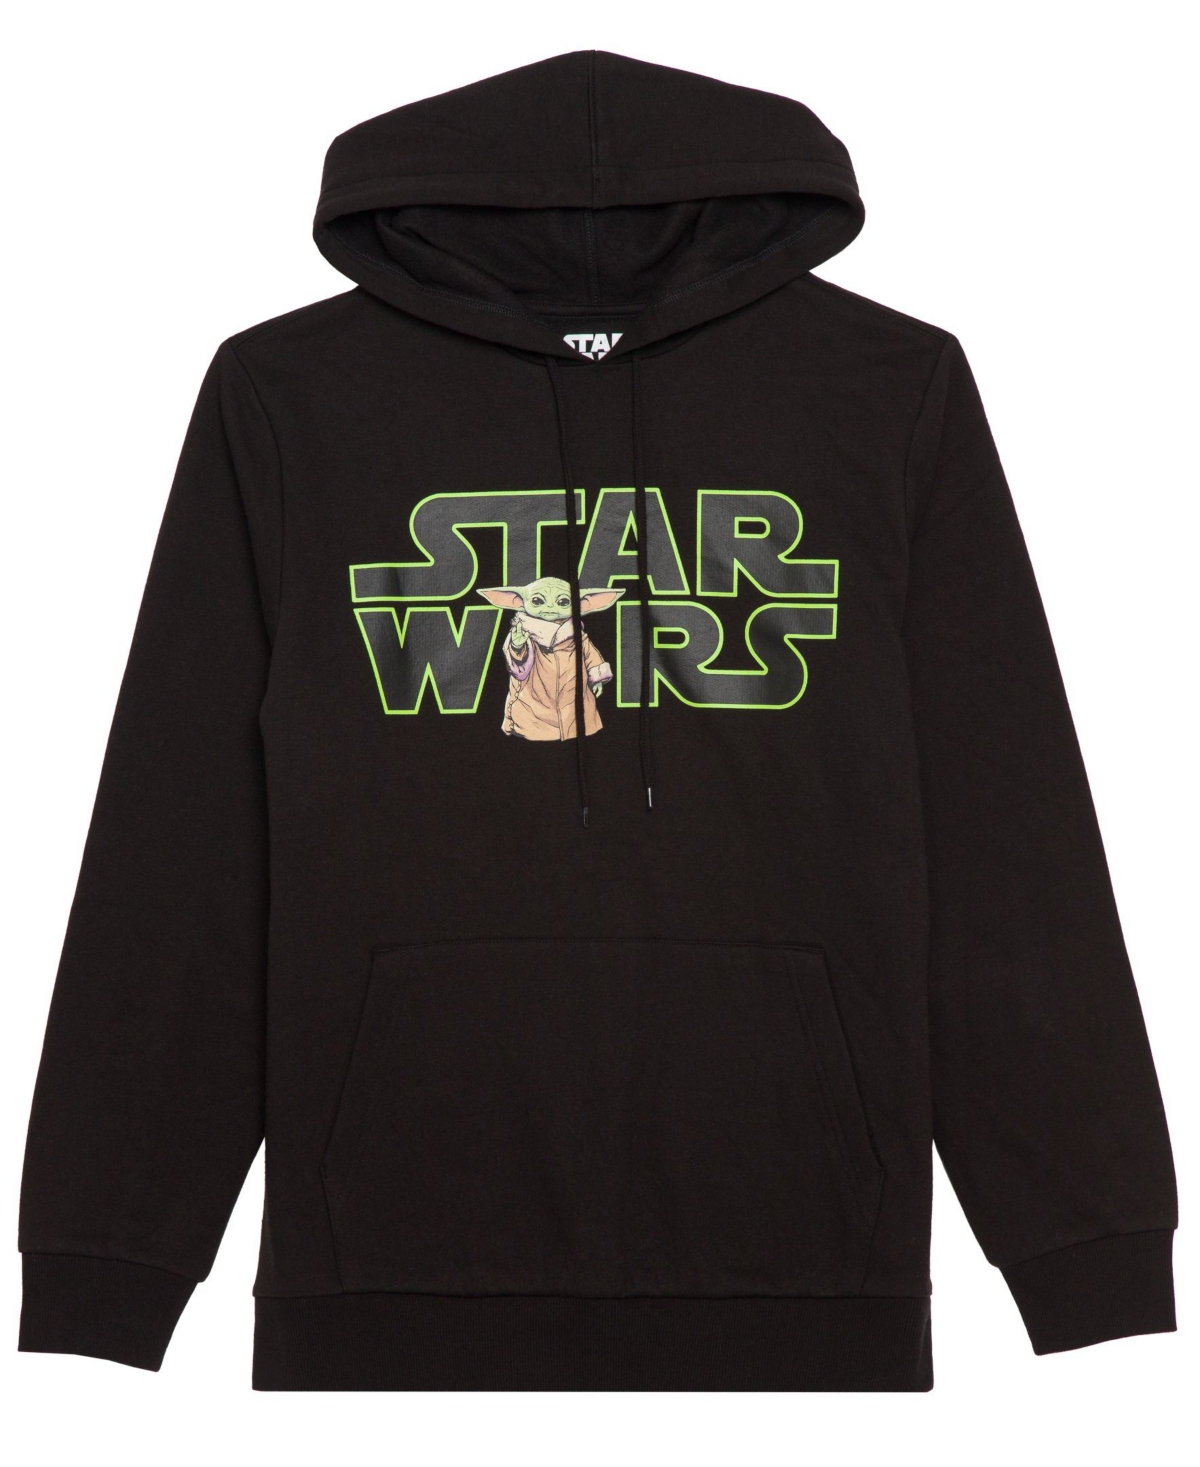 Hybrid Apparel Men's Star Wars Hooded Fleece Sweatshirt